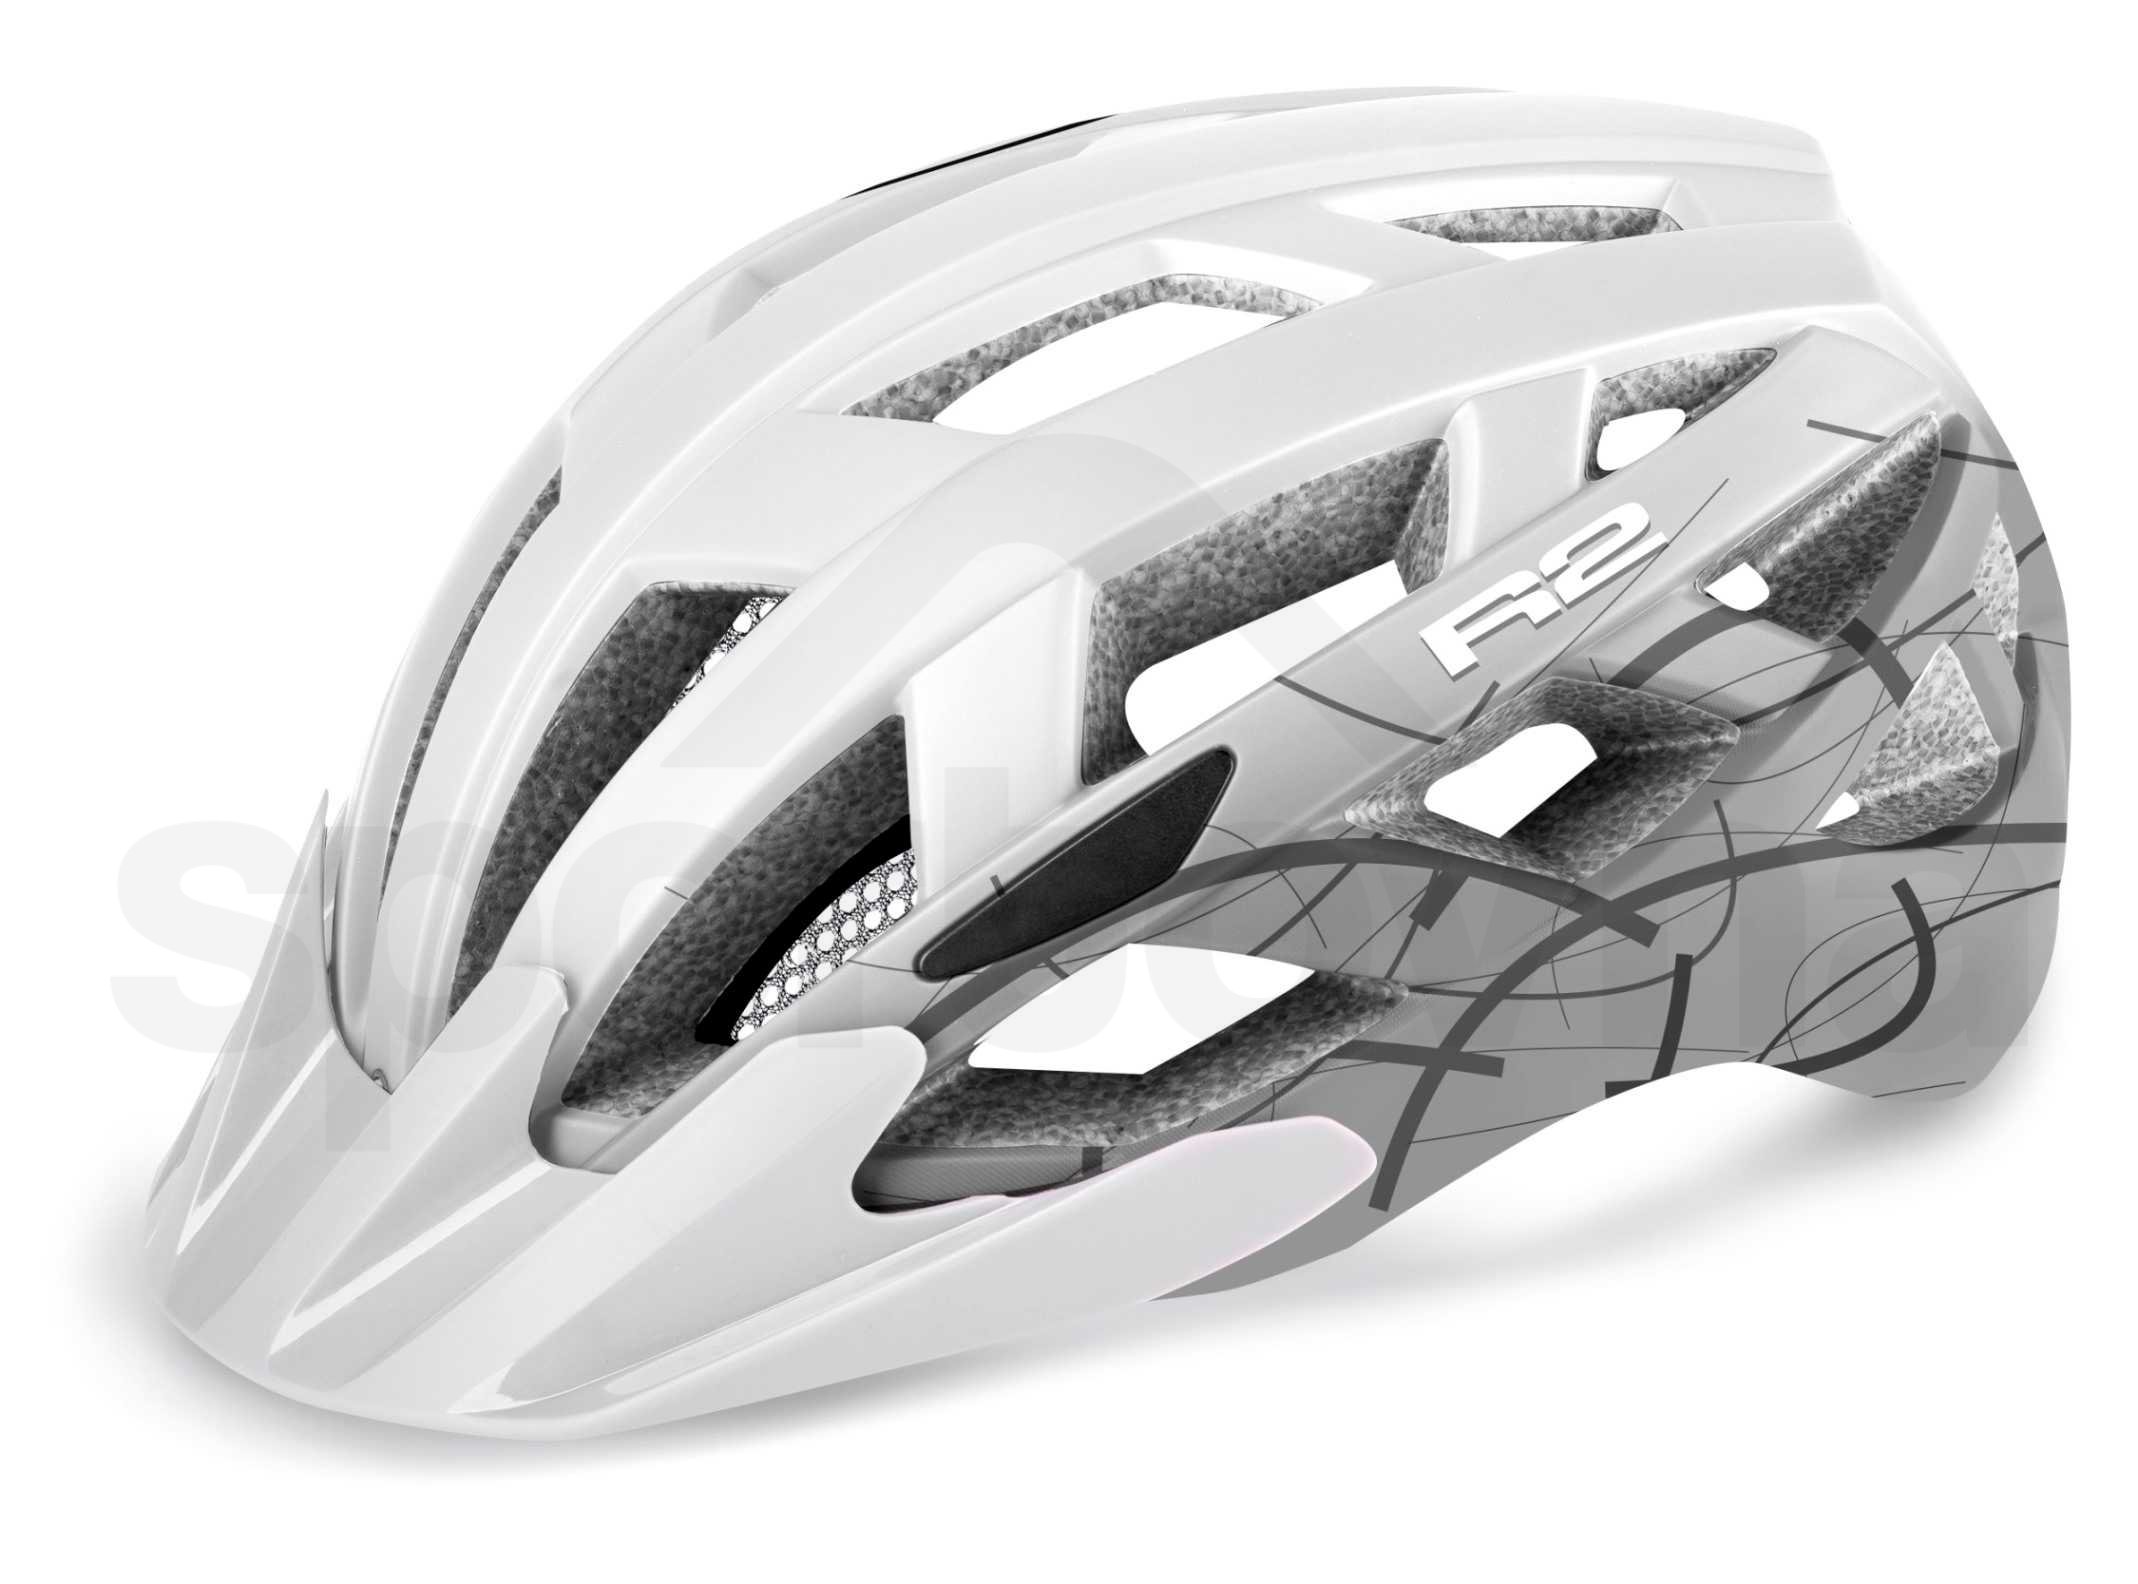 Cyklo helma R2 Lumen - bílá/šedá